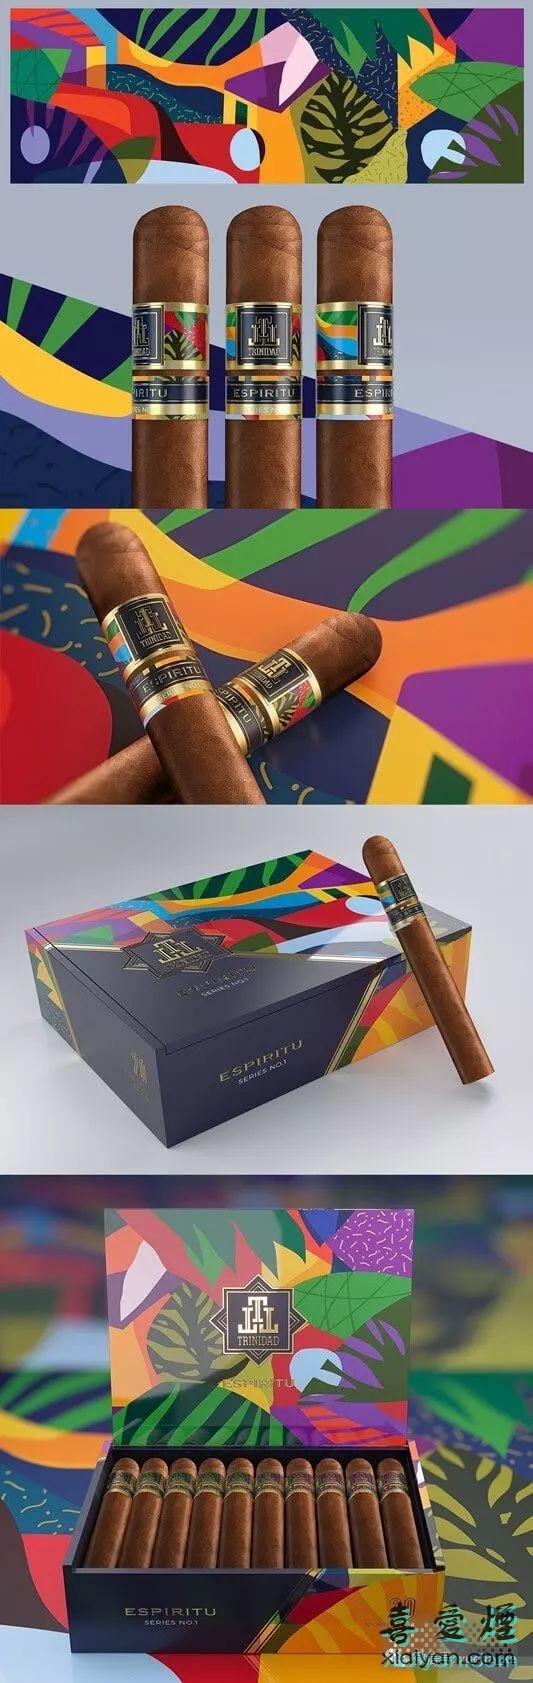 特立尼达推出一款艺术感很强的雪茄-2